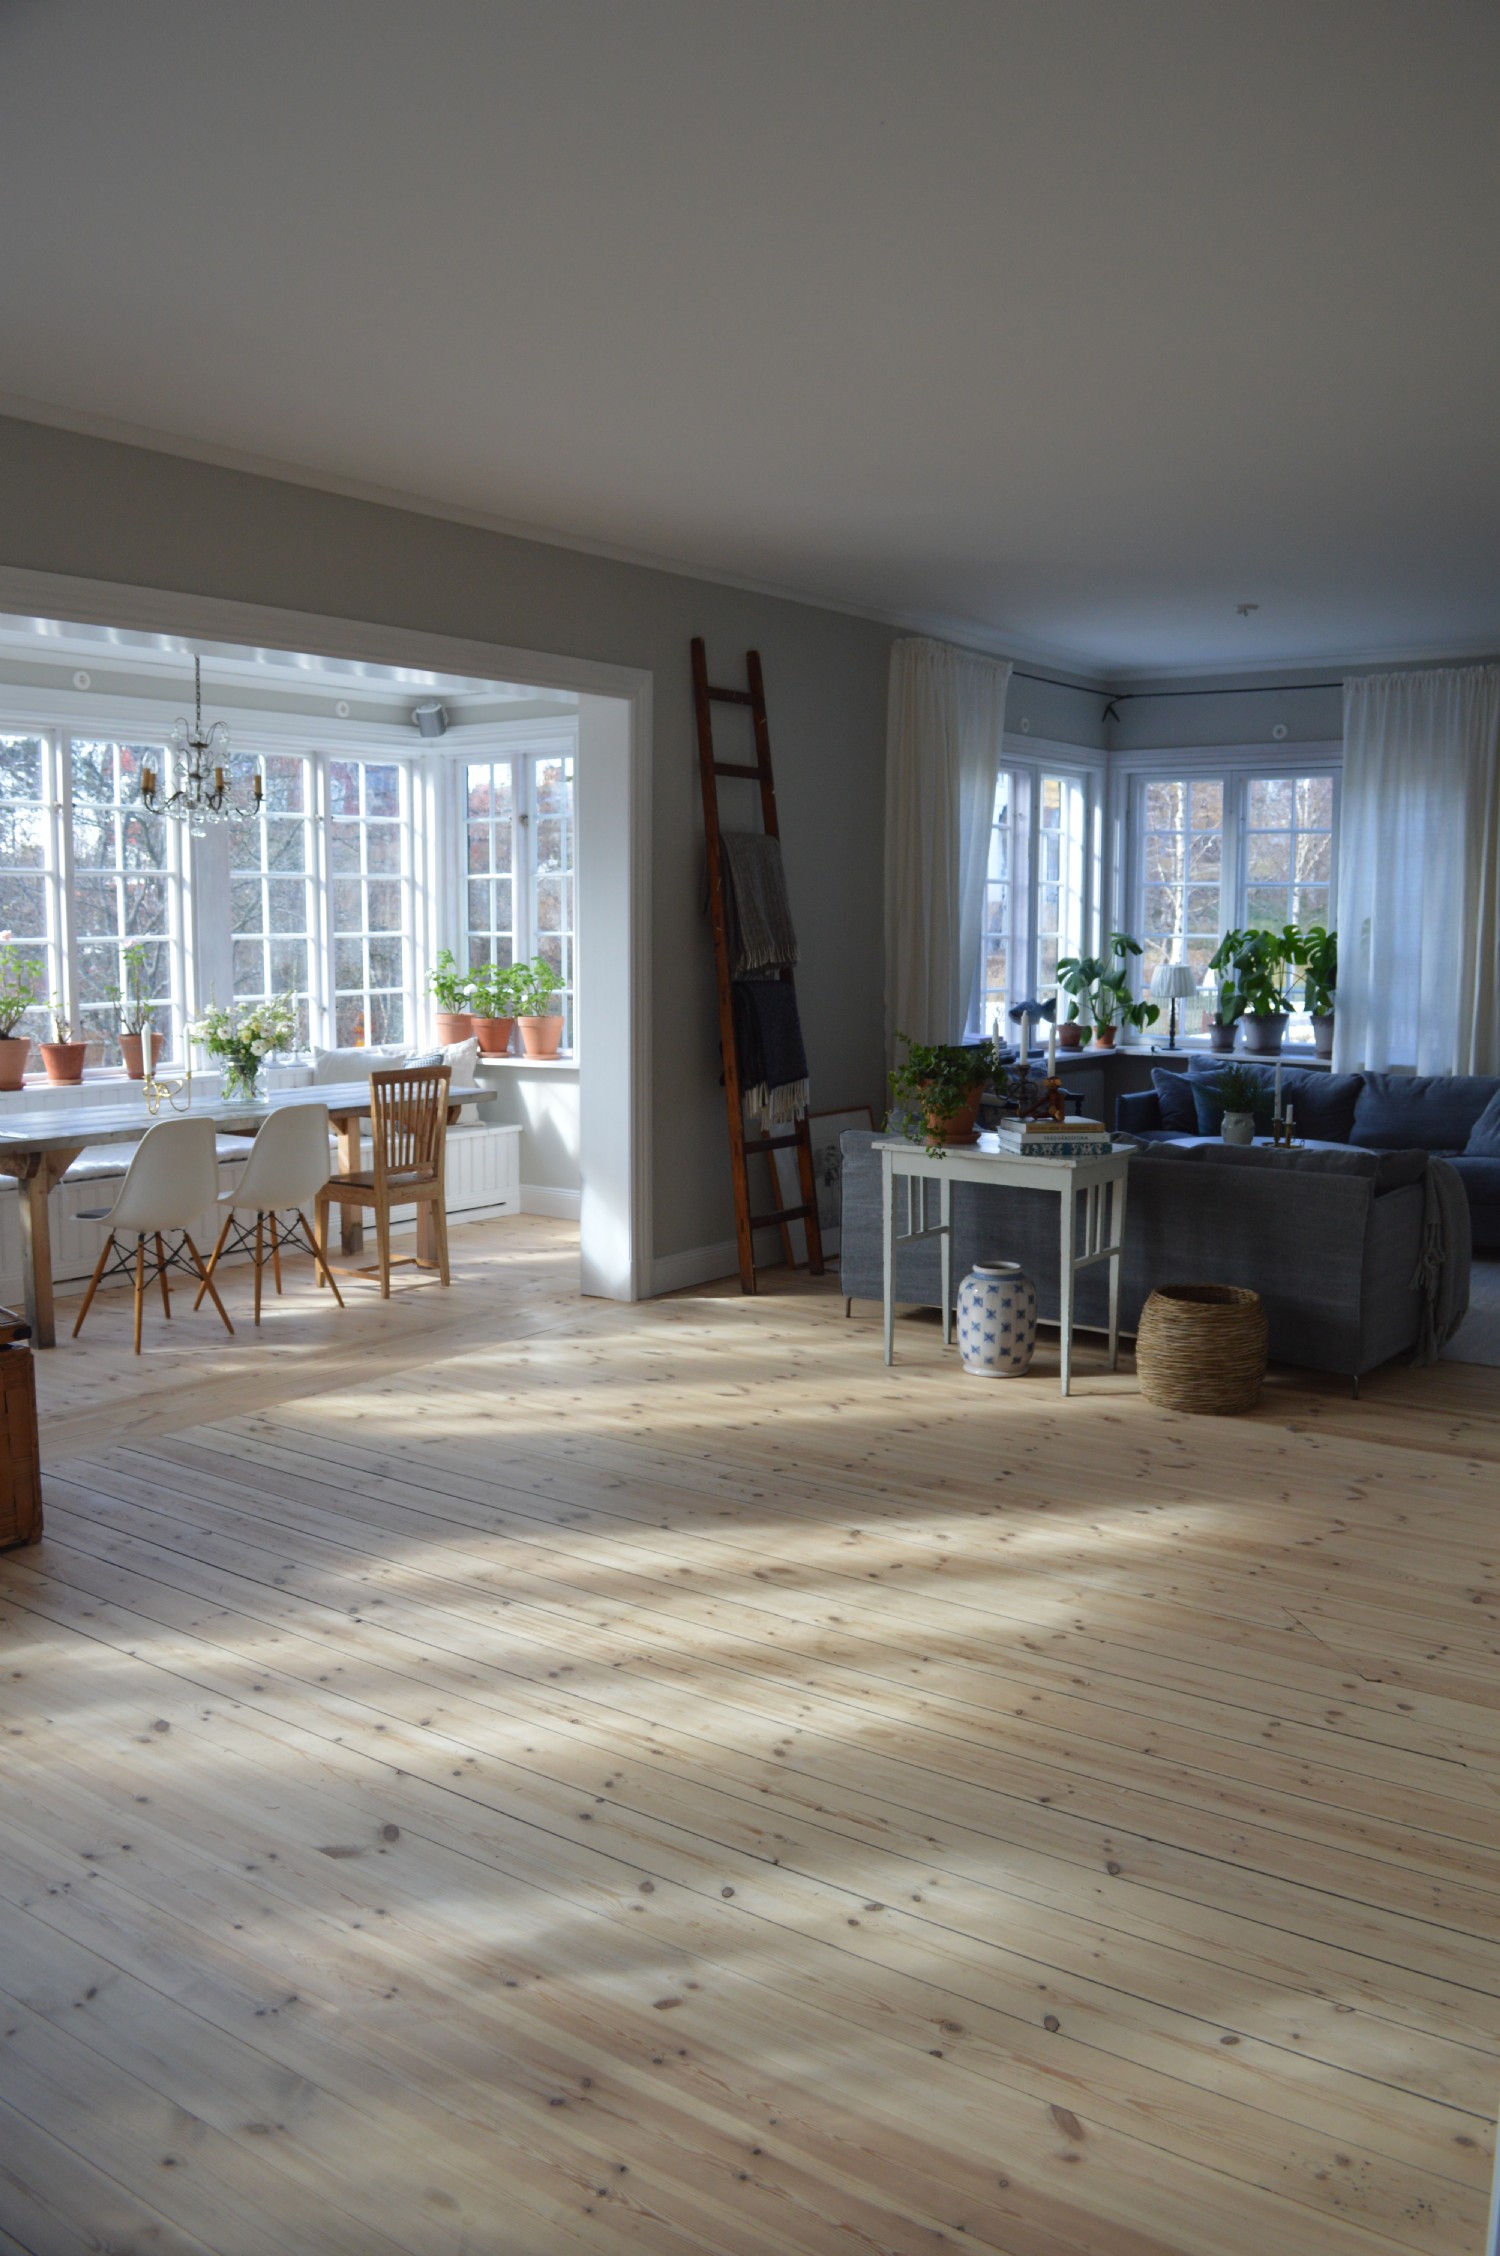 Matsal/vardagsrum entreplan/ Dining room/living room at entrance floor 